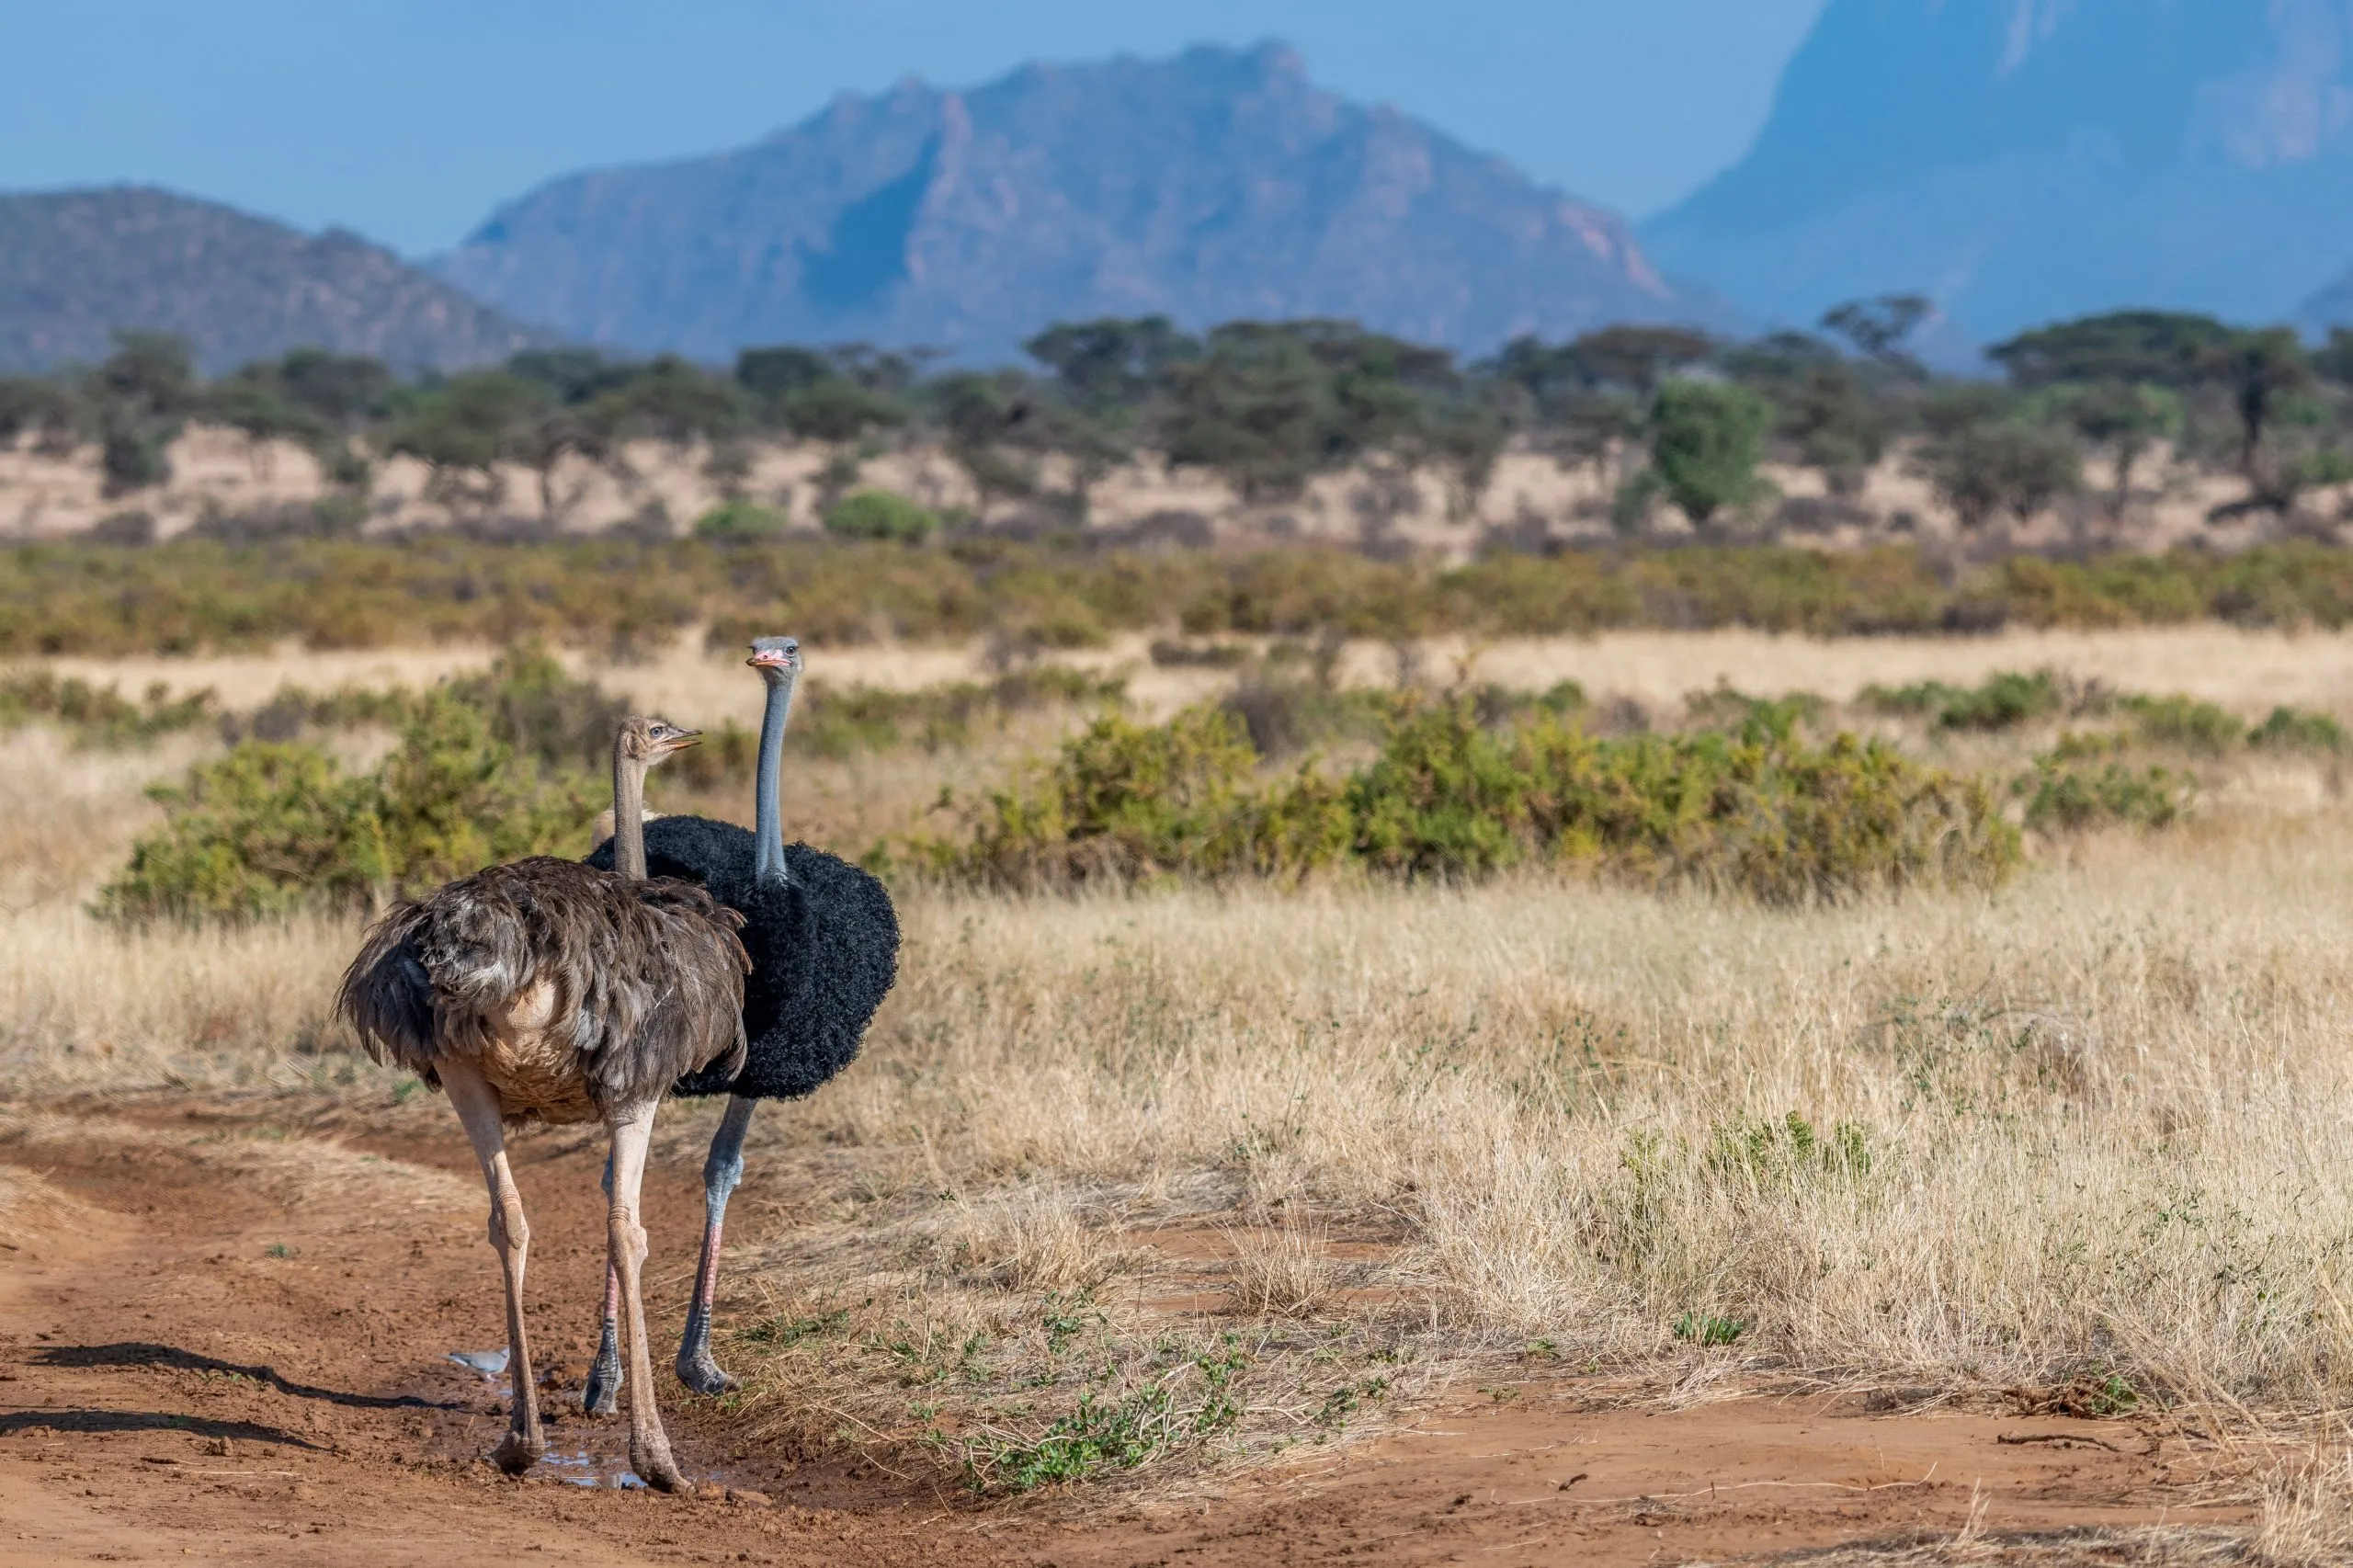 Halfdroog landschap in Samburu National Reserve, Kenia. Zeldzame mannelijke en vrouwelijke Somalische struisvogel op de voorgrond. Een parend paar. De huidskleur van de nek en dijen is grijsblauw. Enorme loopvogel. Afrika.